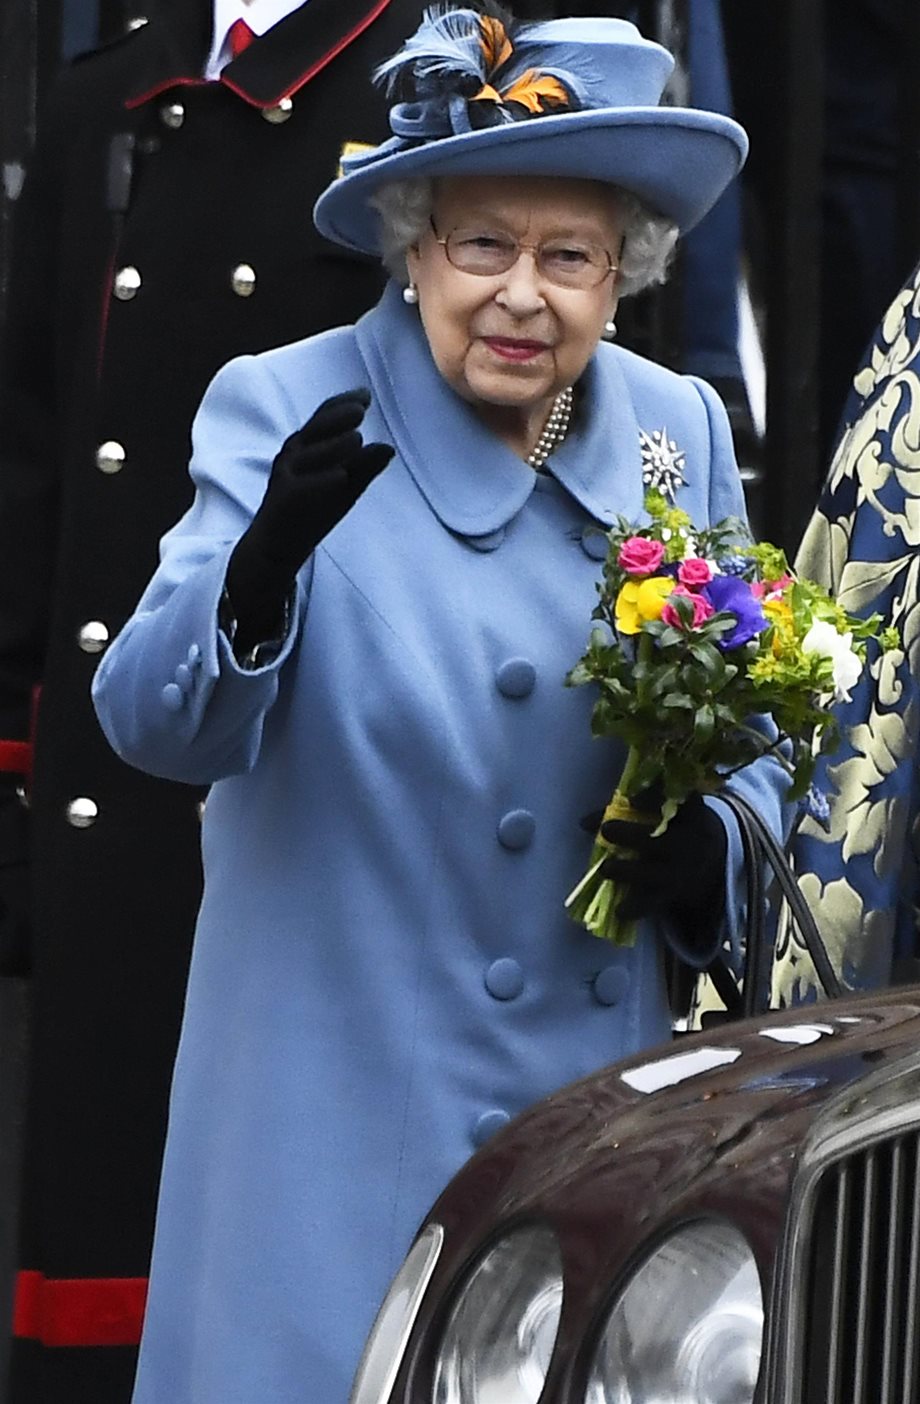 Δείτε την Βασίλισσα Ελισάβετ να κάνει ιππασία στα 94! 